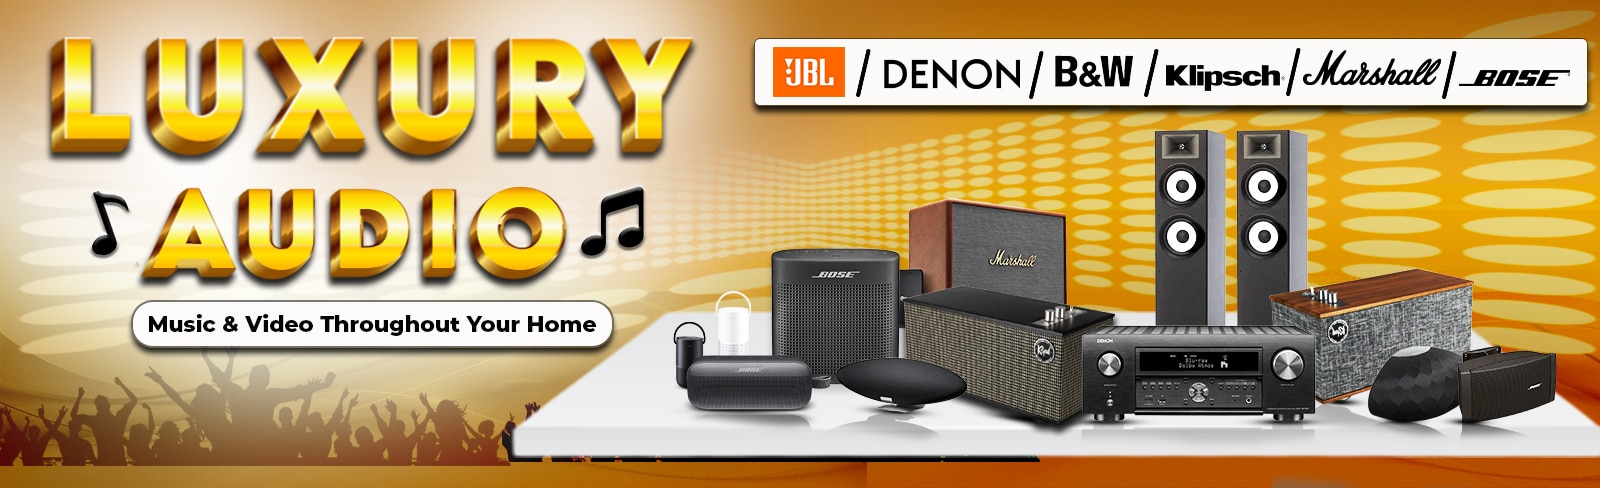 Buy Luxury Audio Products